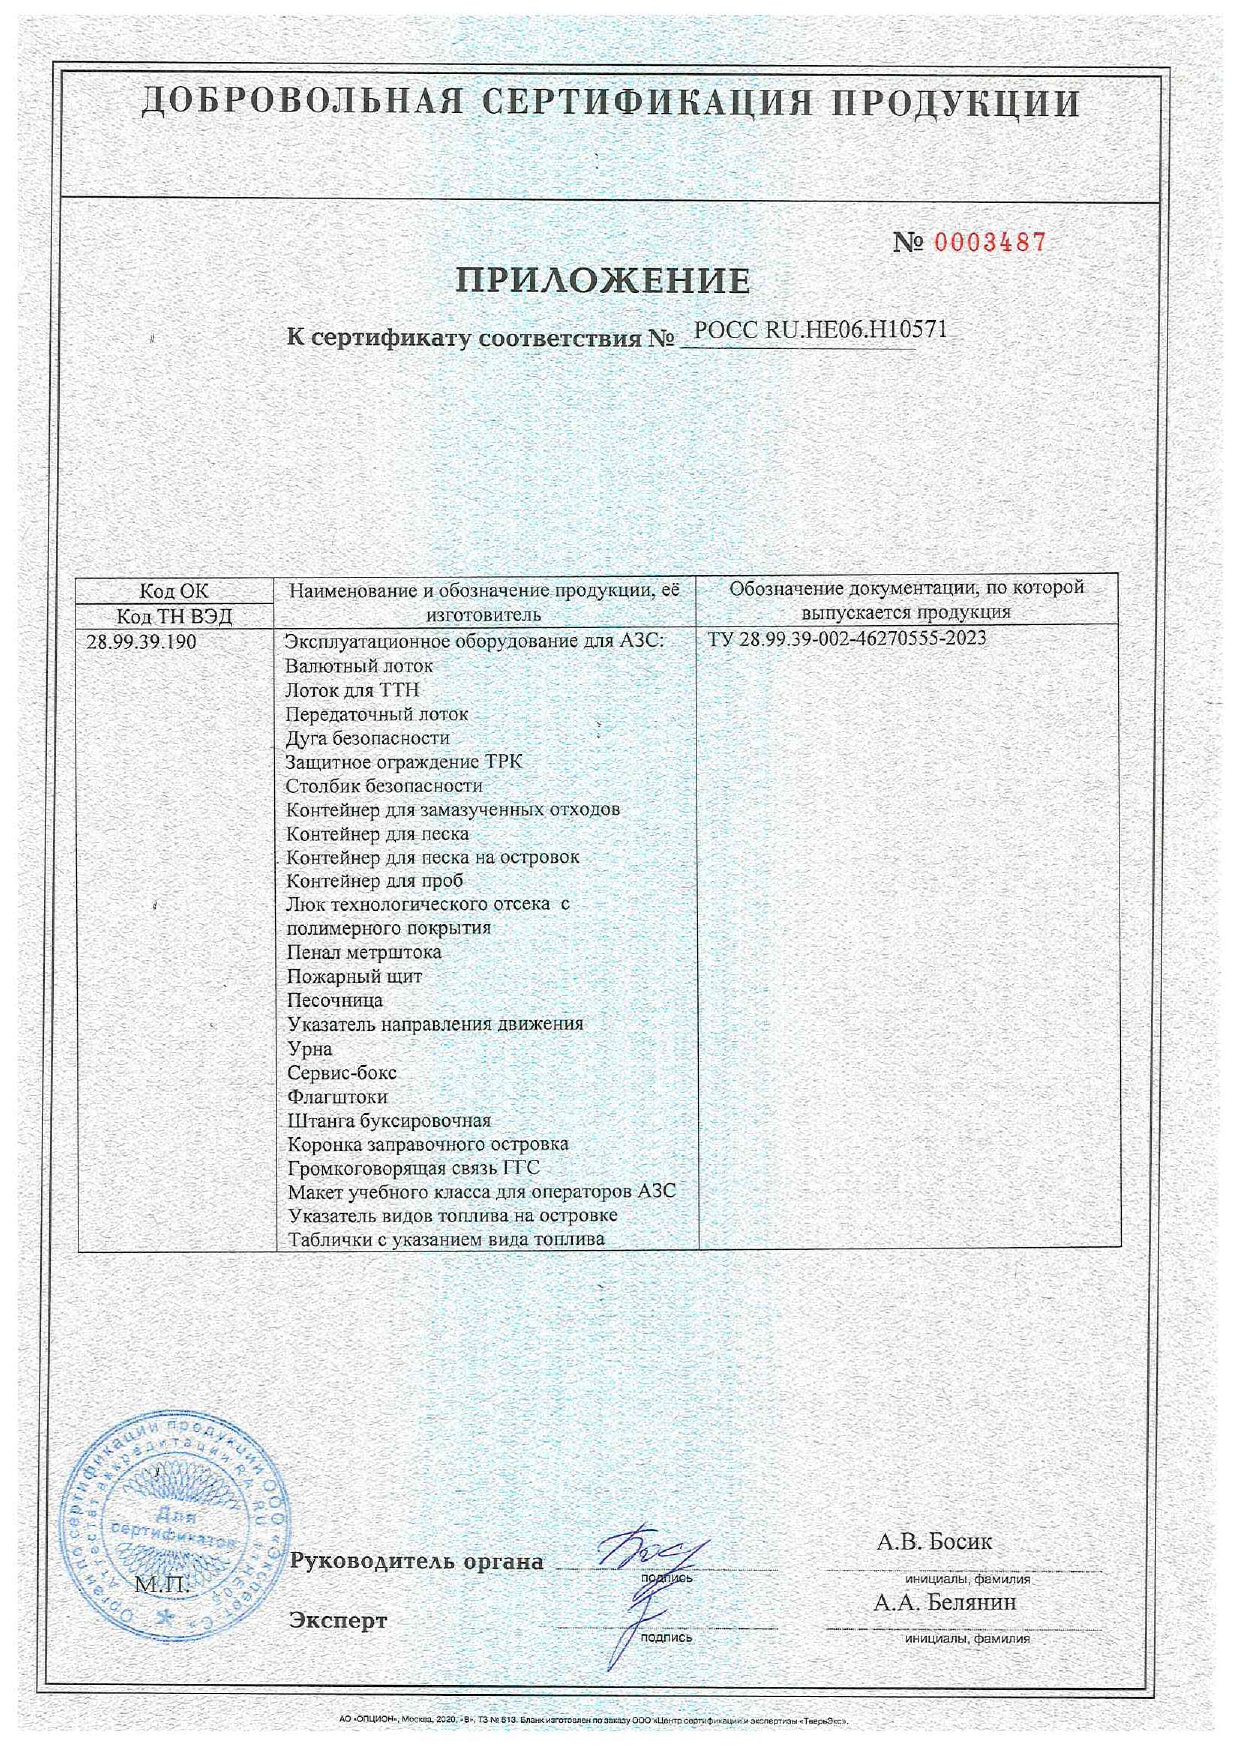 Сертификат на эксплуатационное оборудование - стр 2